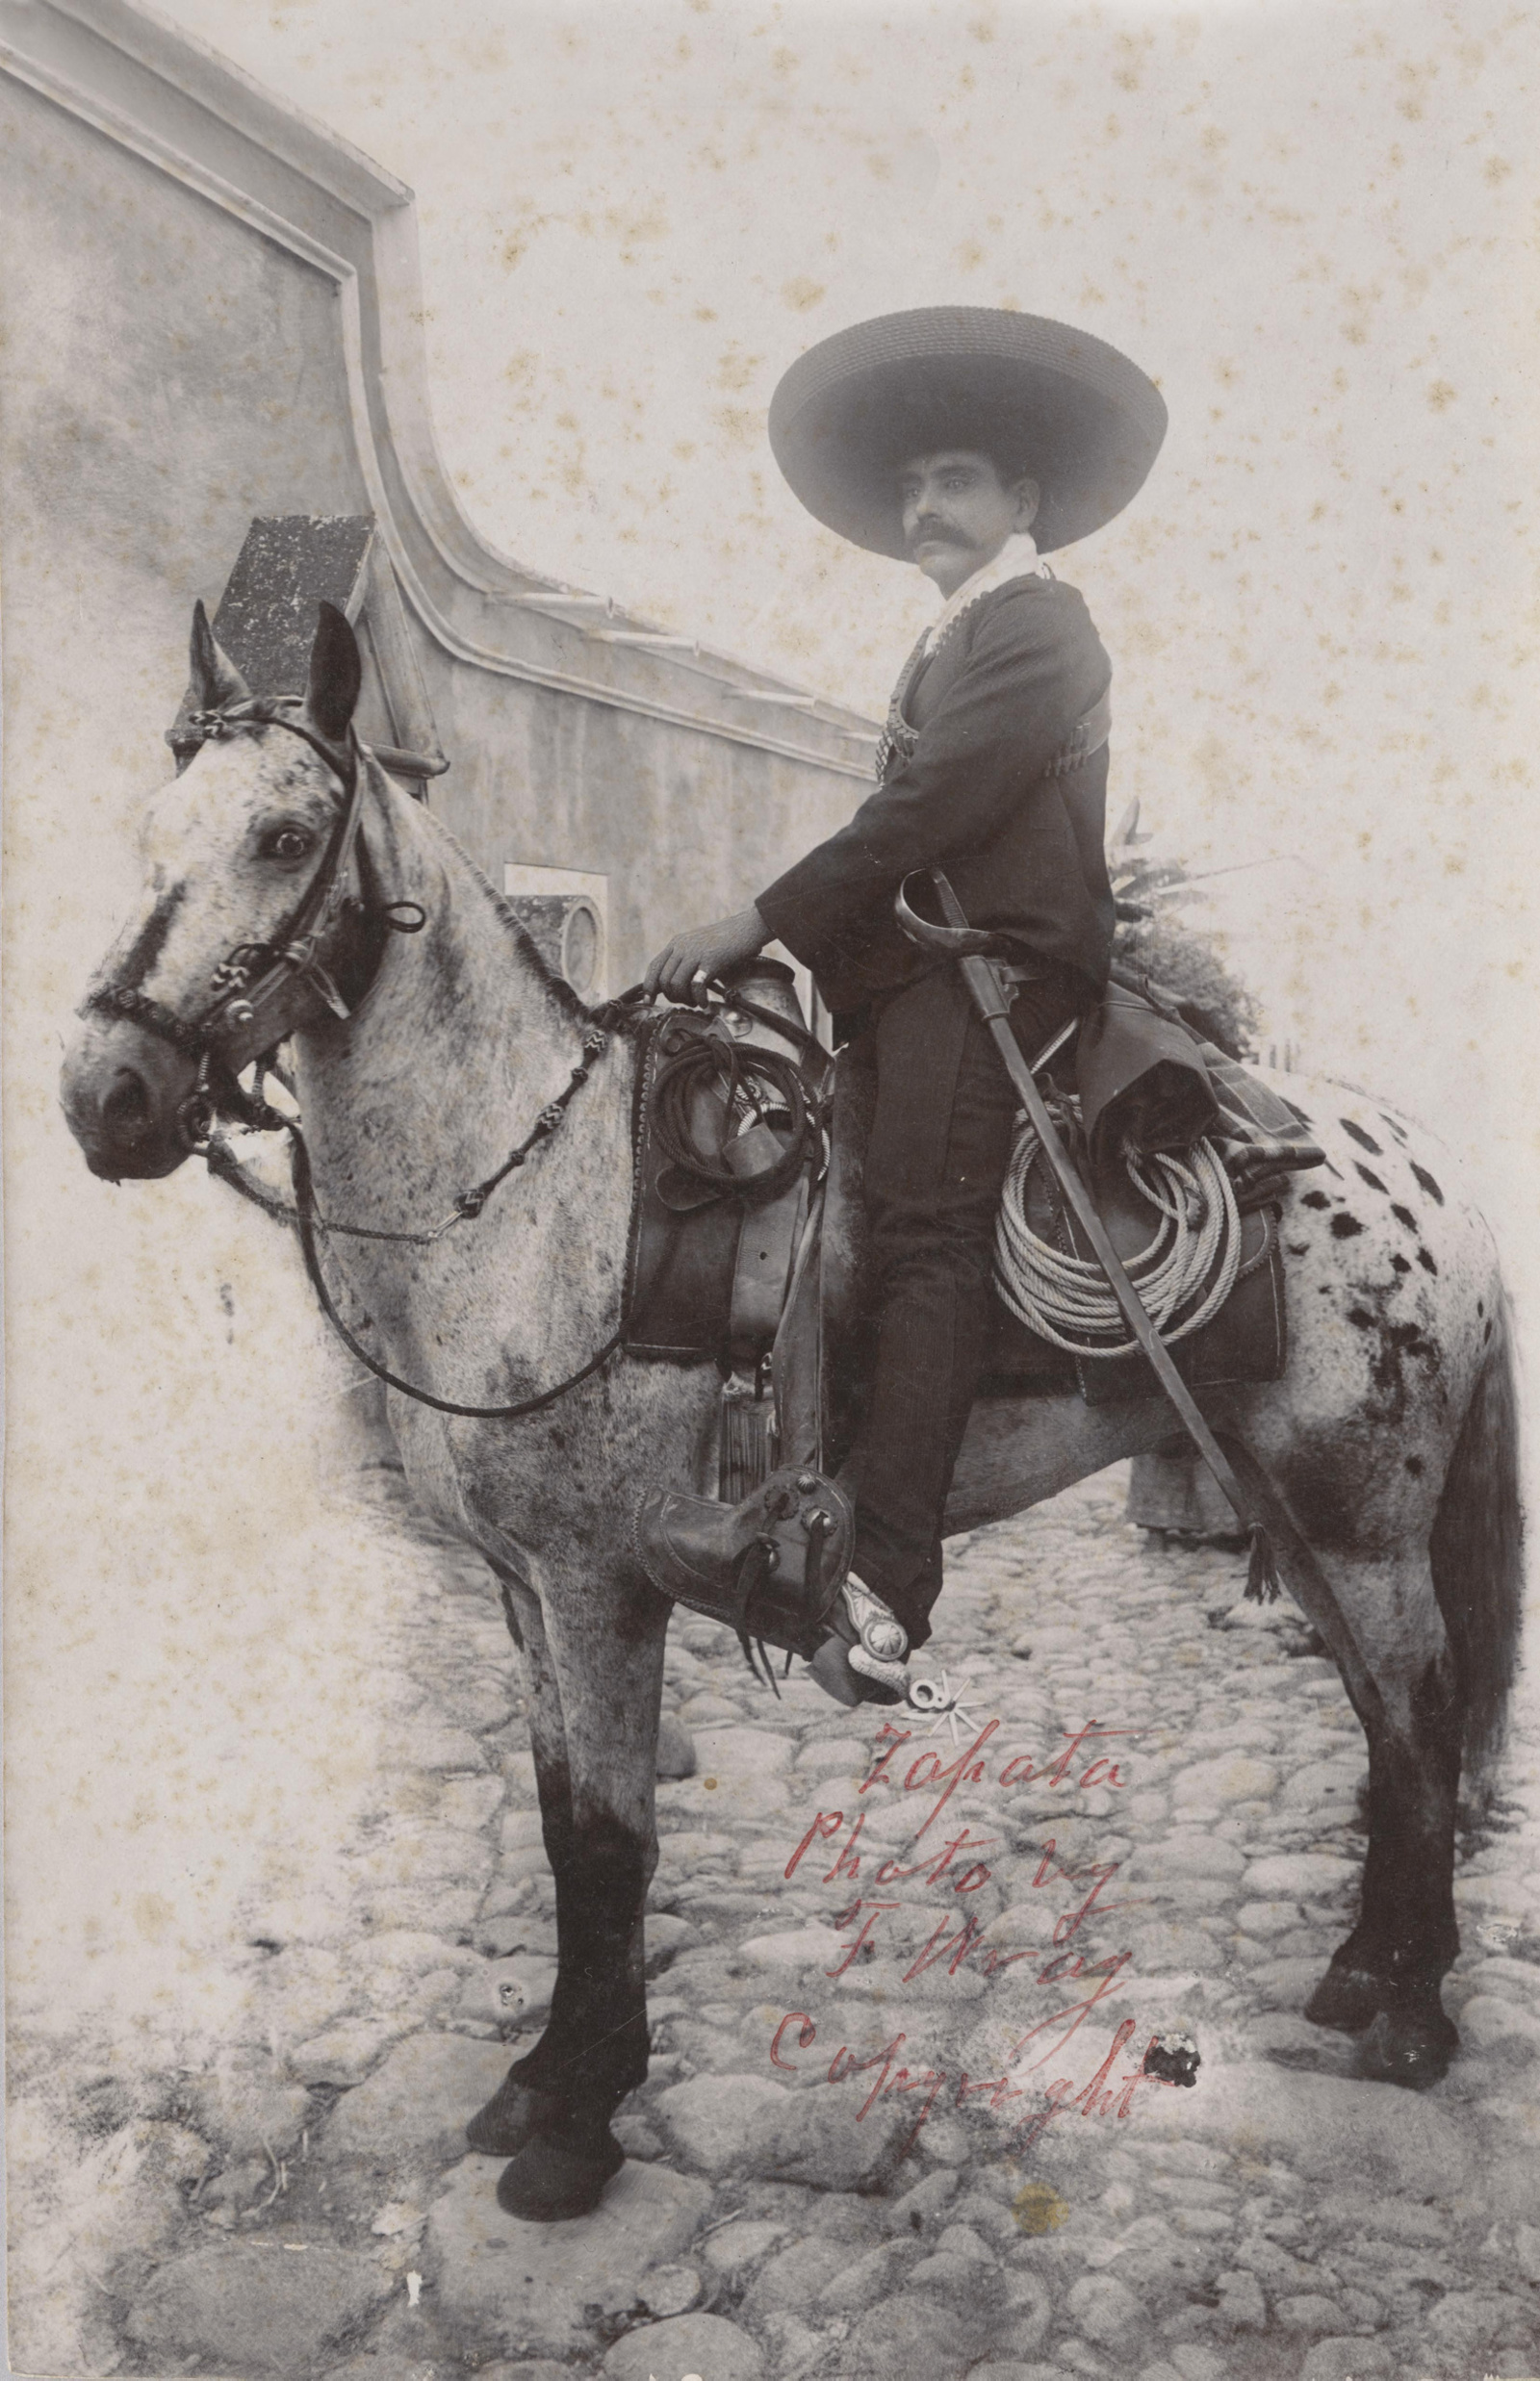 Nacional. Este año se festejará el centenario de la muerte del caudillo de la Revolución Mexicana Emiliano Zapata, con ediciones de libros, exposiciones, foros de reflexión y diferentes conferencias.